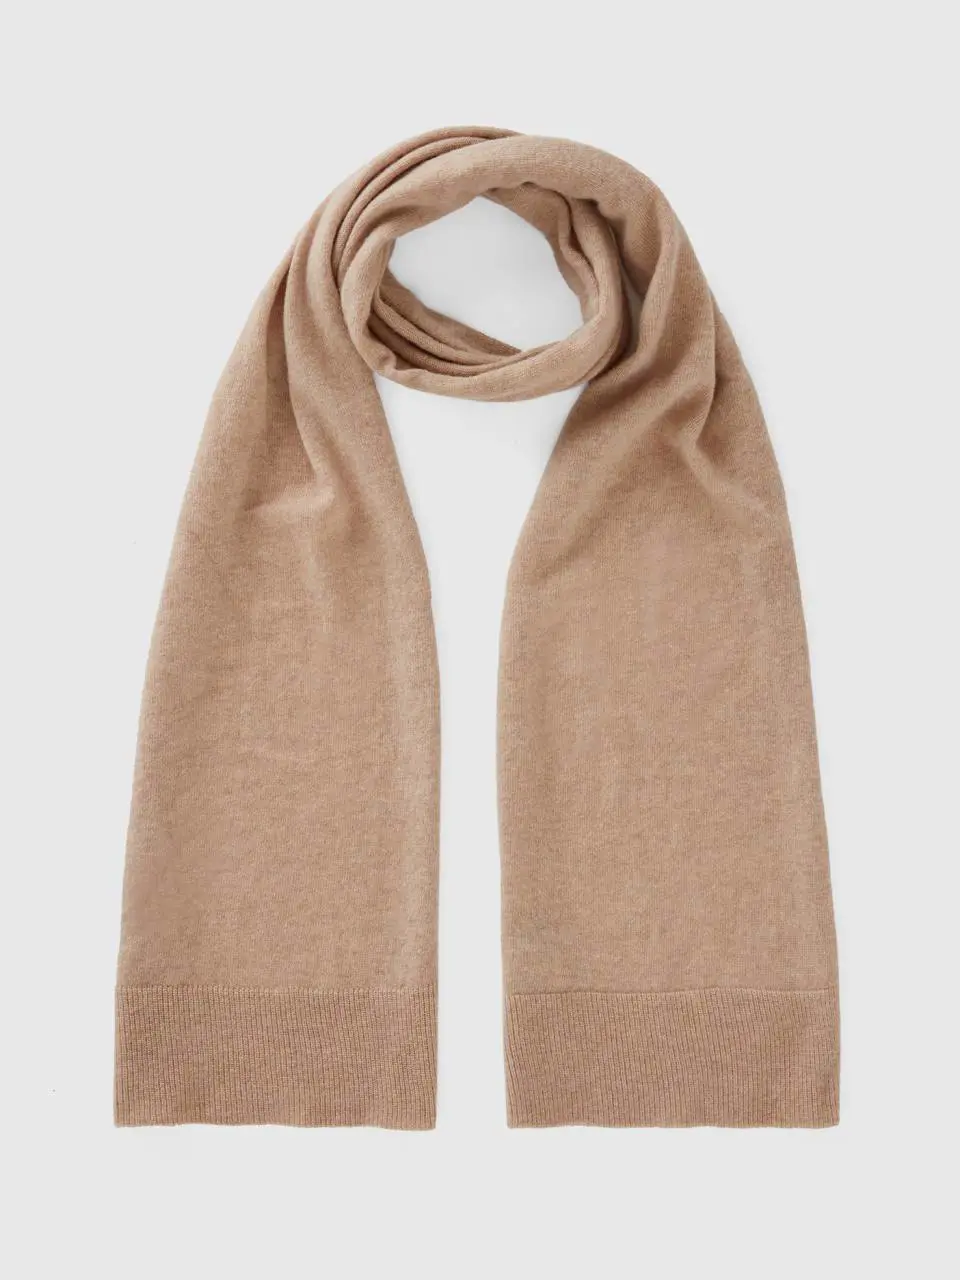 Benetton beige scarf in pure merino wool. 1